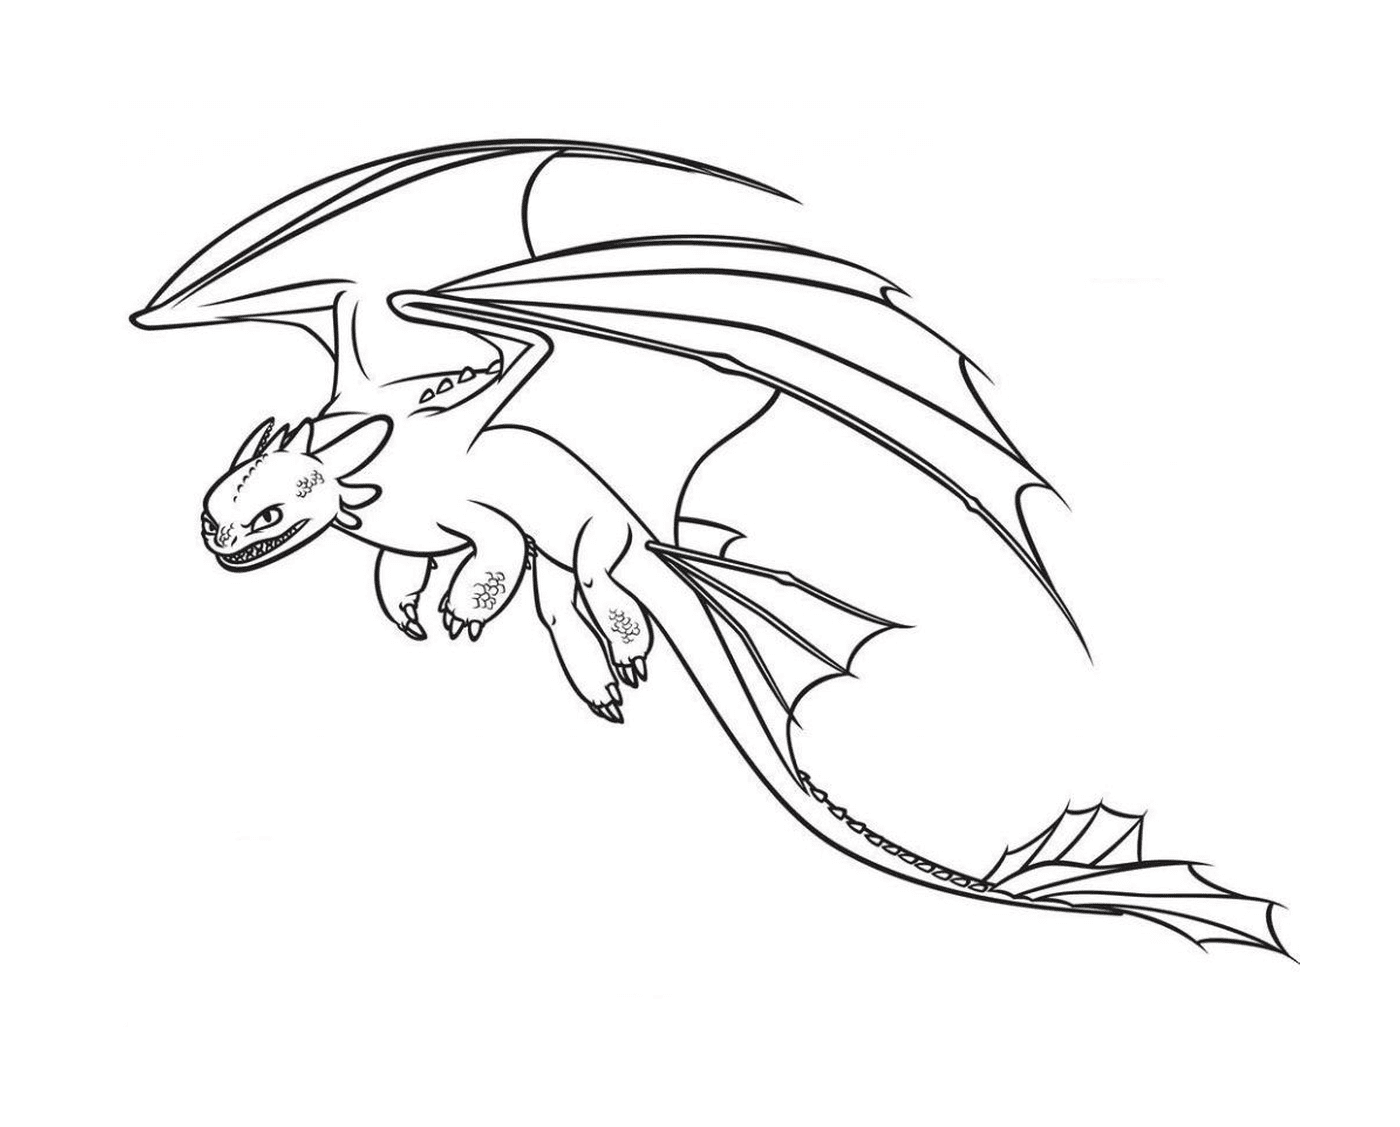   Toothless, le dragon le plus rapide 